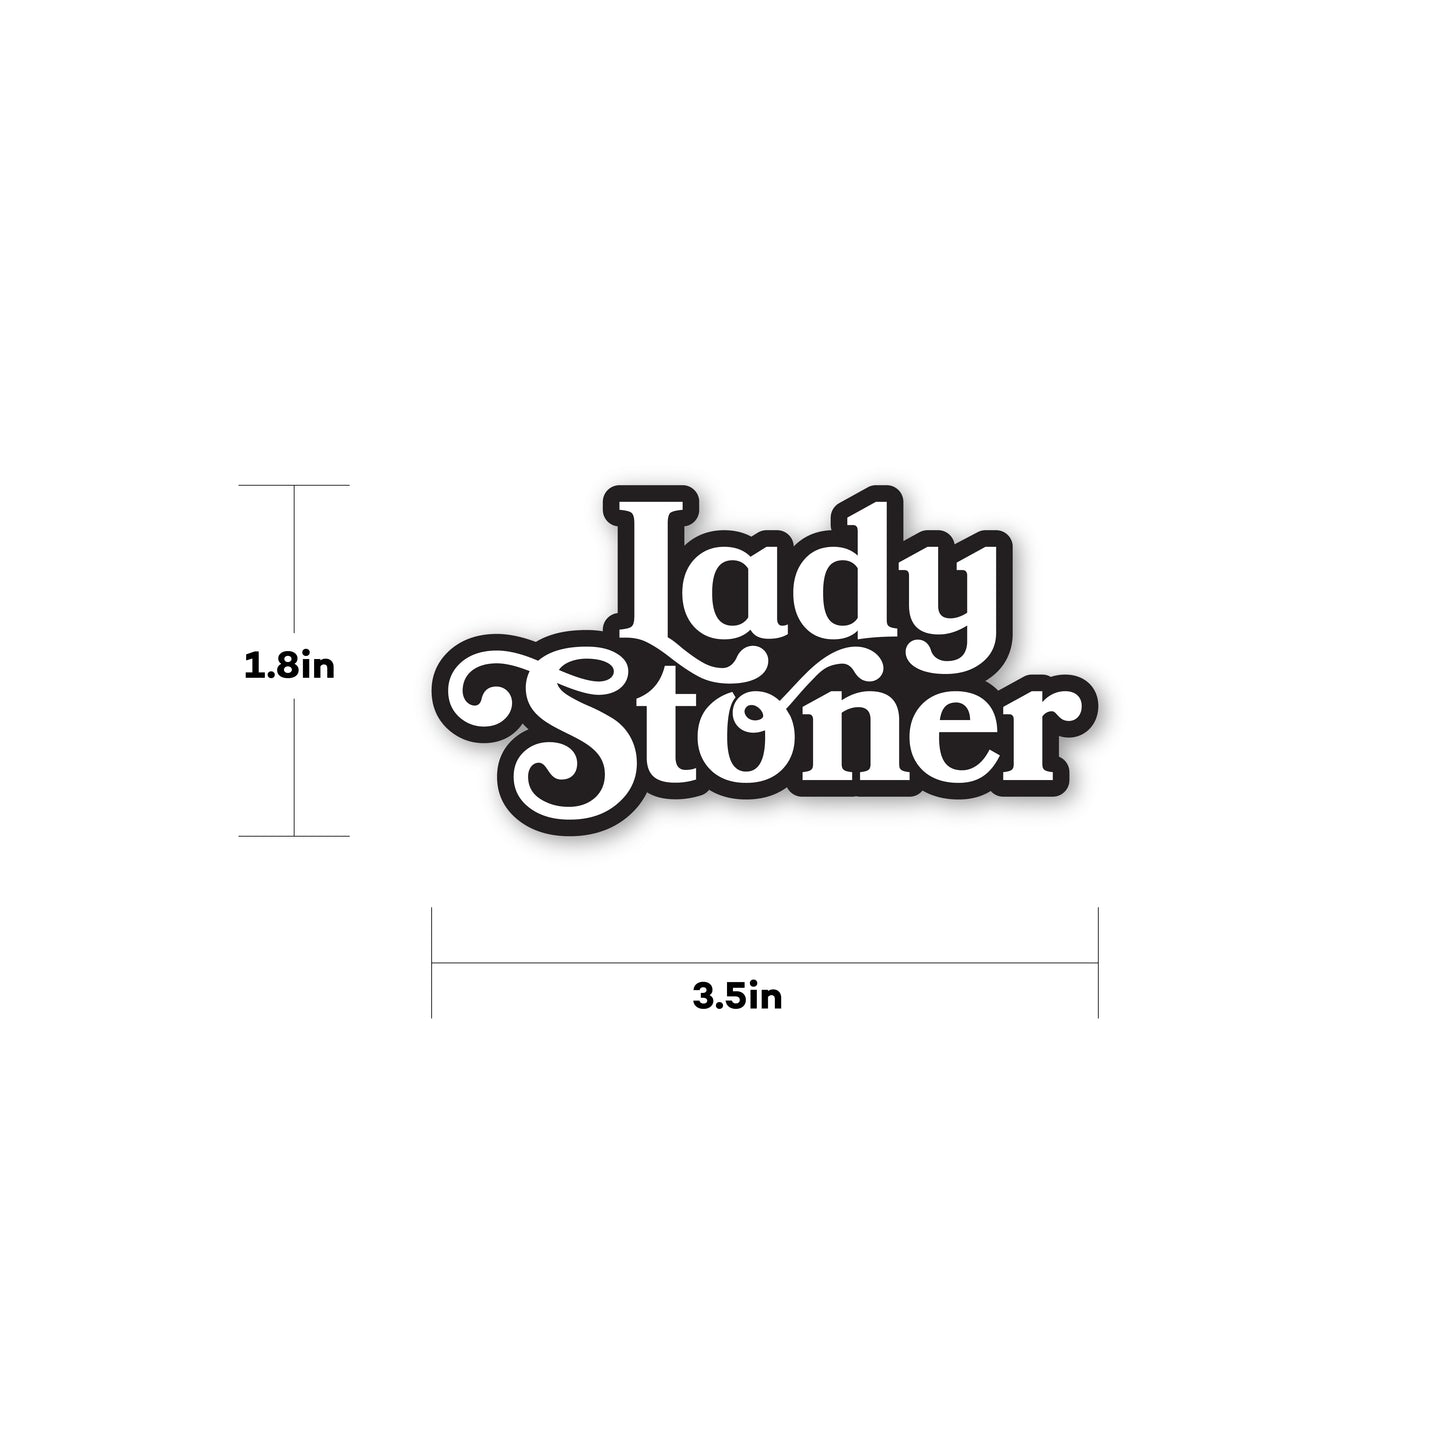 Lady Stoner